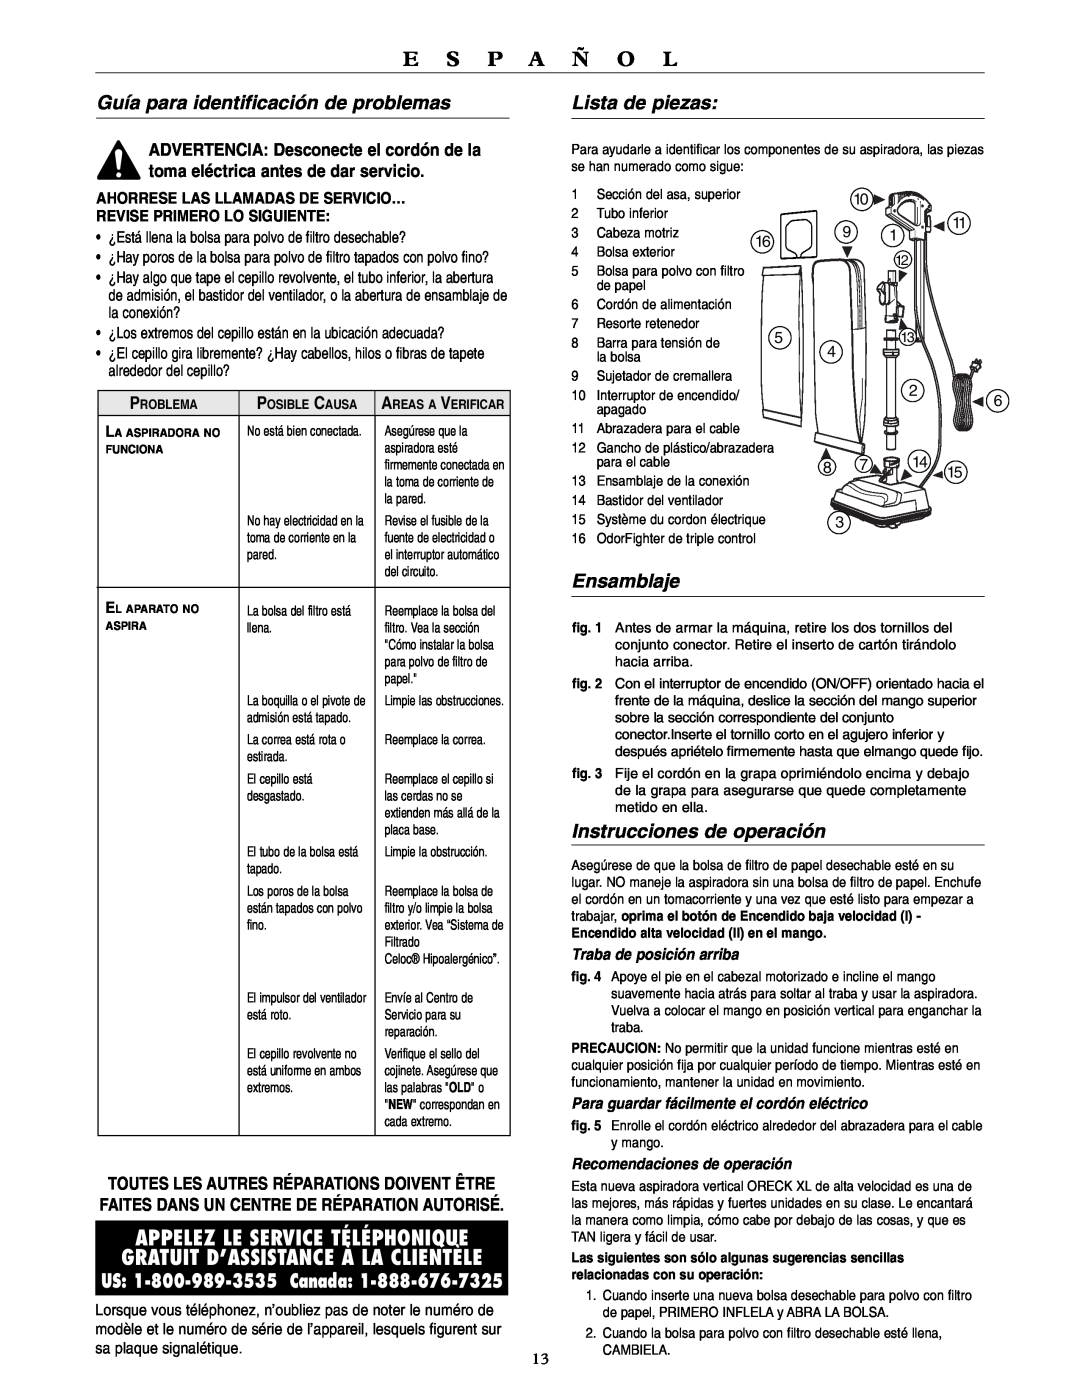 Oreck U4120H2 warranty Guía para identificación de problemas, Lista de piezas, E S P A Ñ O L, Ensamblaje 